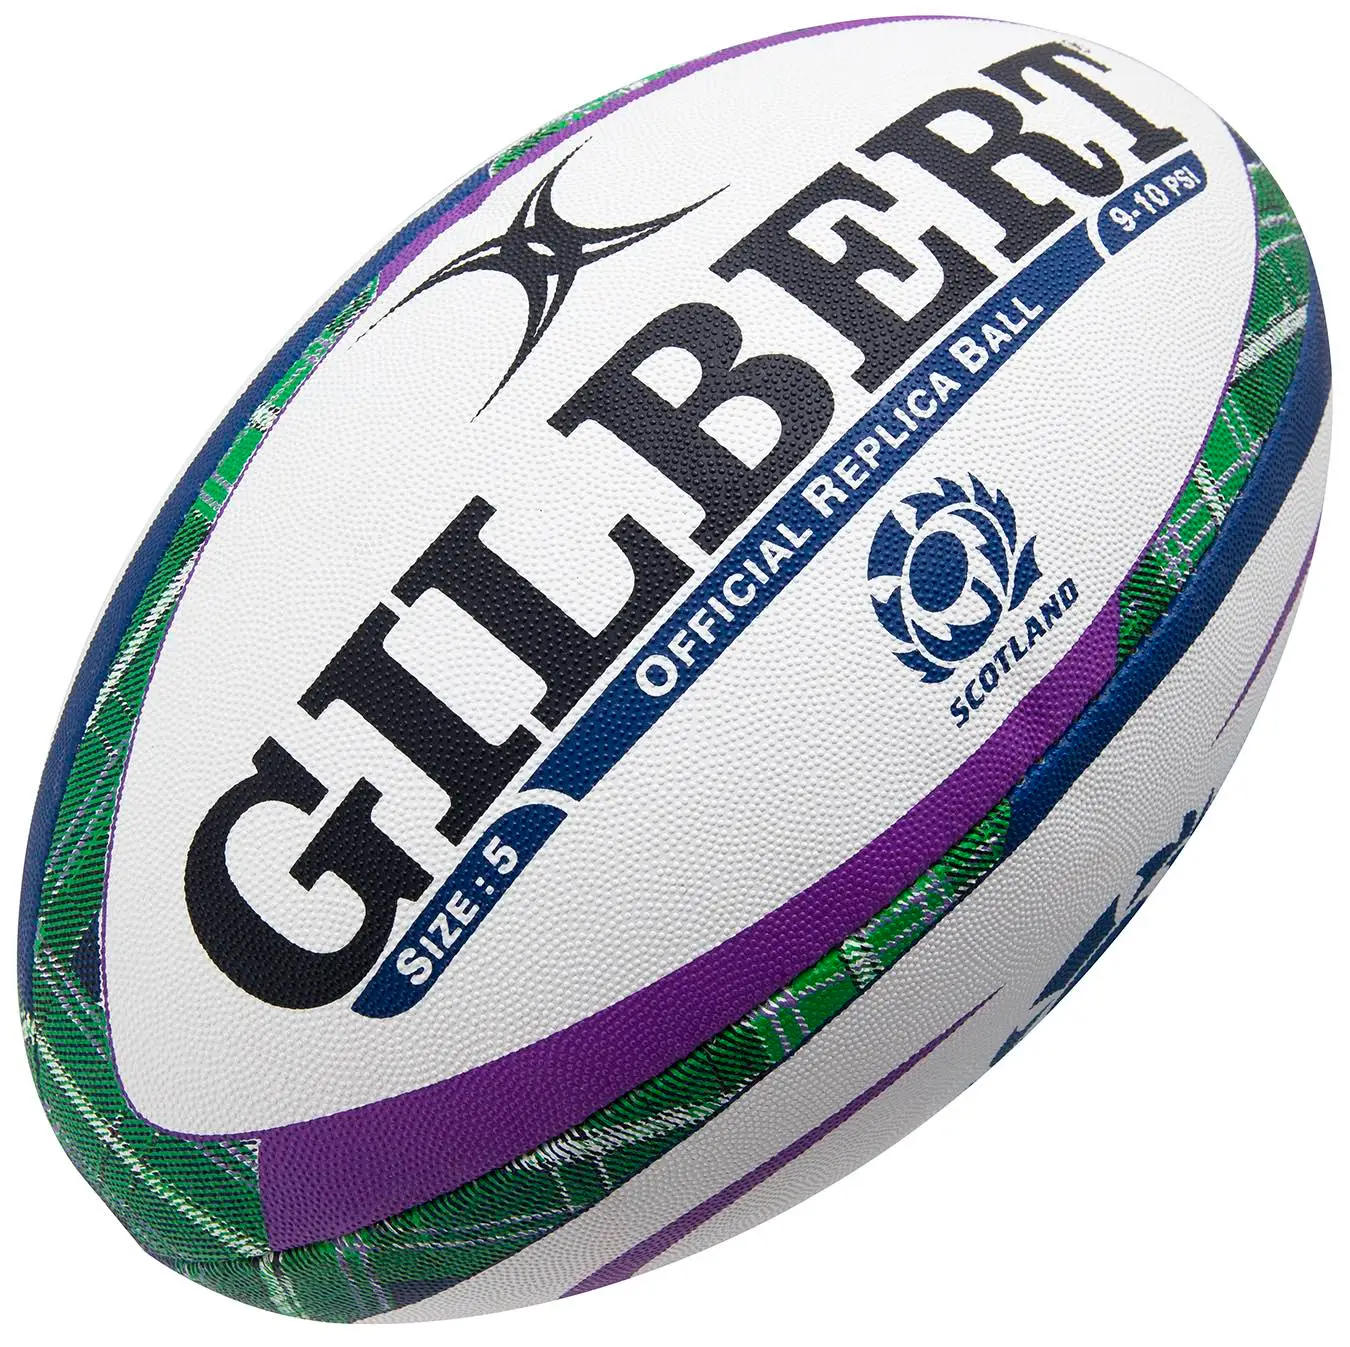 Ballon de Rugby Gilbert Ecosse Tartan